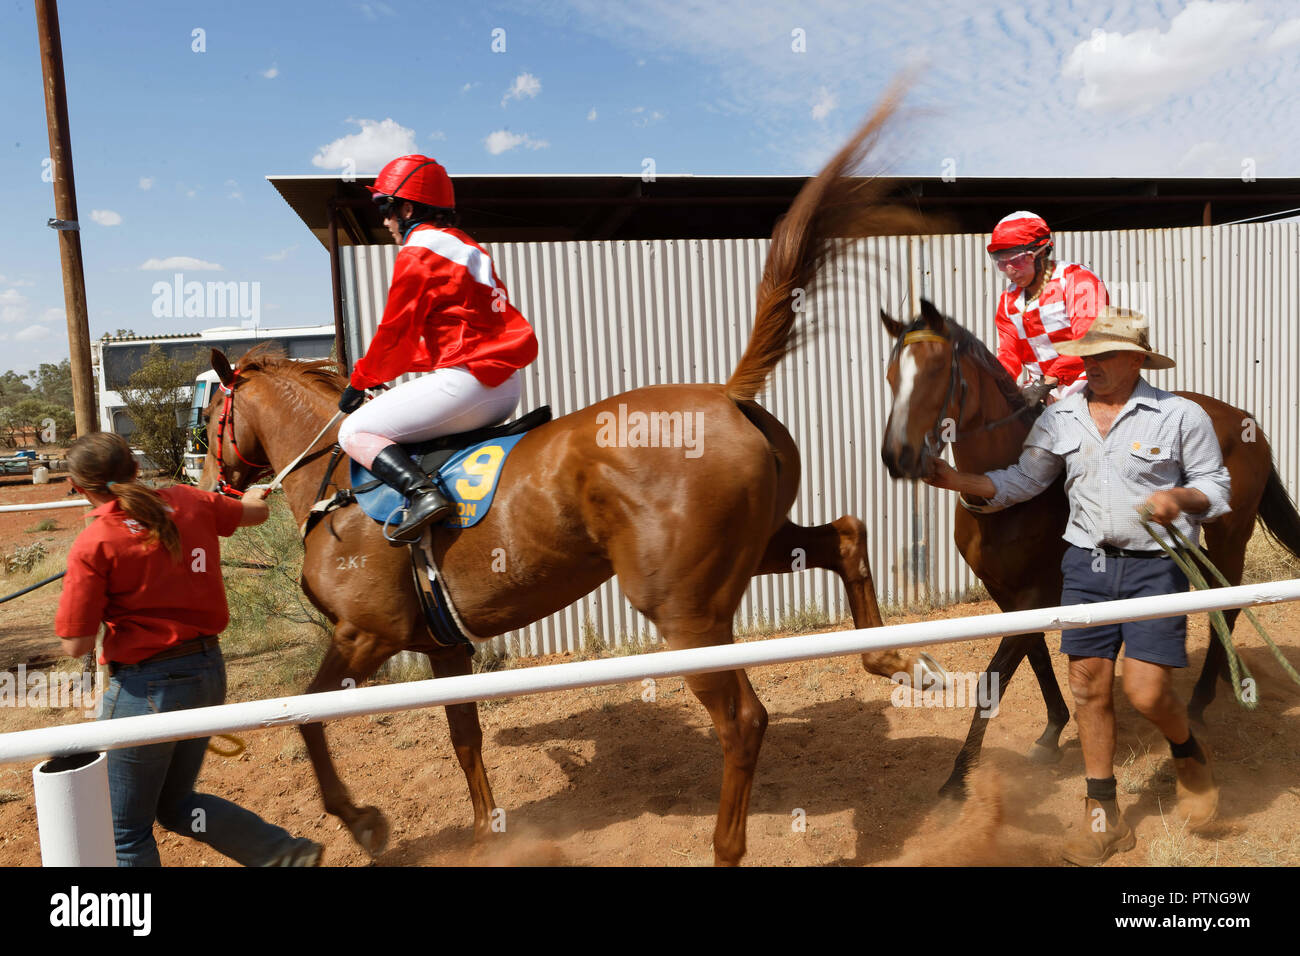 Landor,Station,Outback,Jackaroo,Aussie,horse,Australia,stockman,Austra Stock Photo